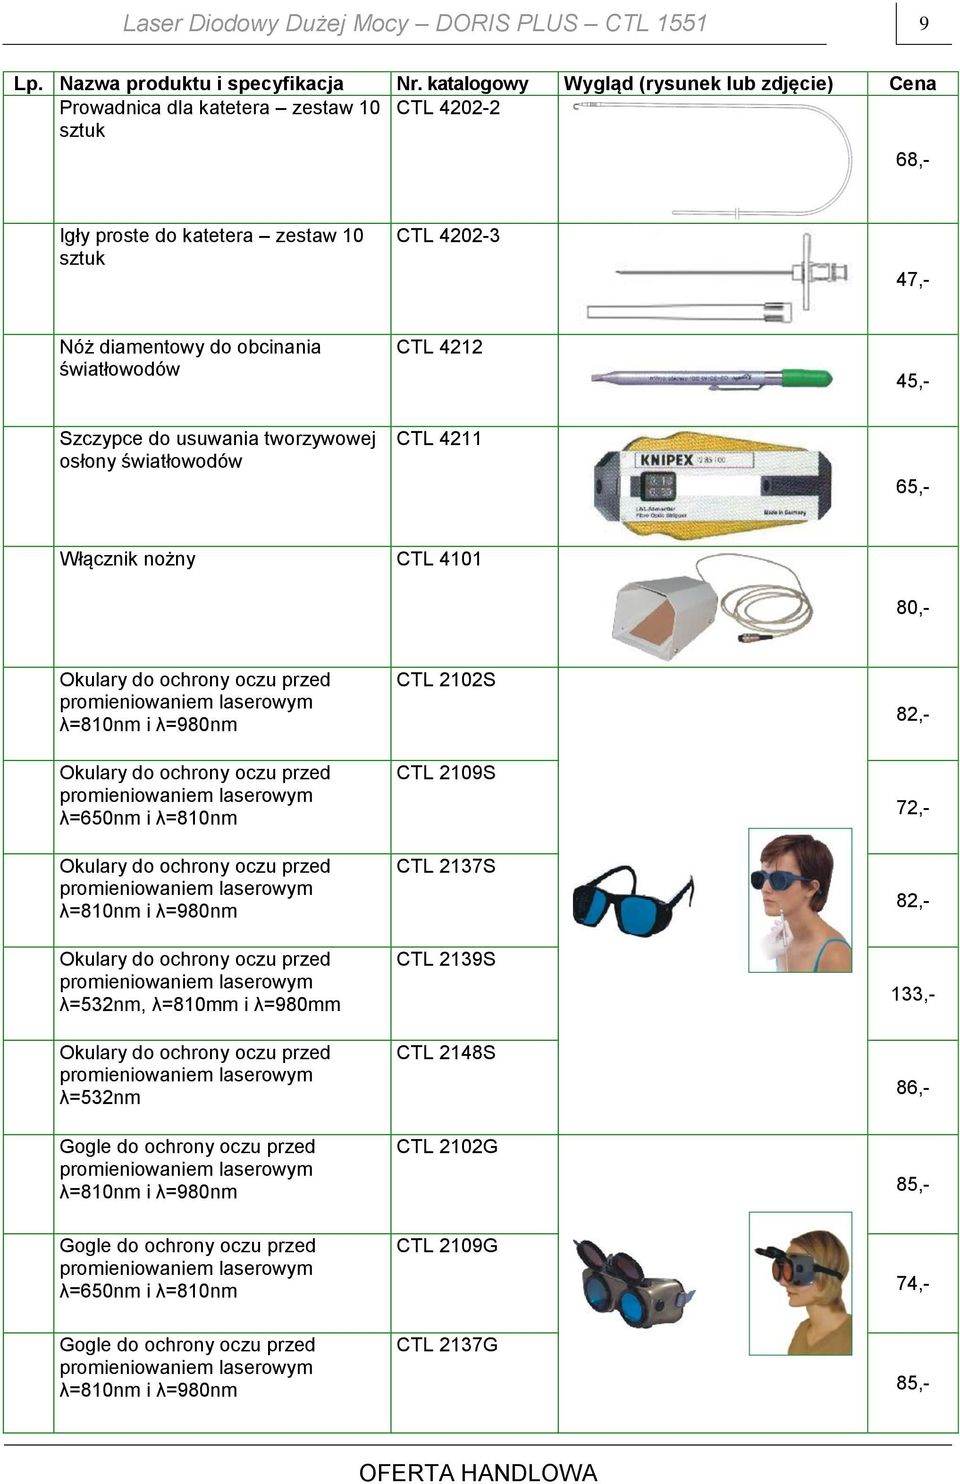 CTL 4212 45,- Szczypce do usuwania tworzywowej osłony światłowodów CTL 4211 65,- Włącznik nożny CTL 4101 80,- Okulary do ochrony oczu przed λ=810nm i λ=980nm Okulary do ochrony oczu przed λ=650nm i